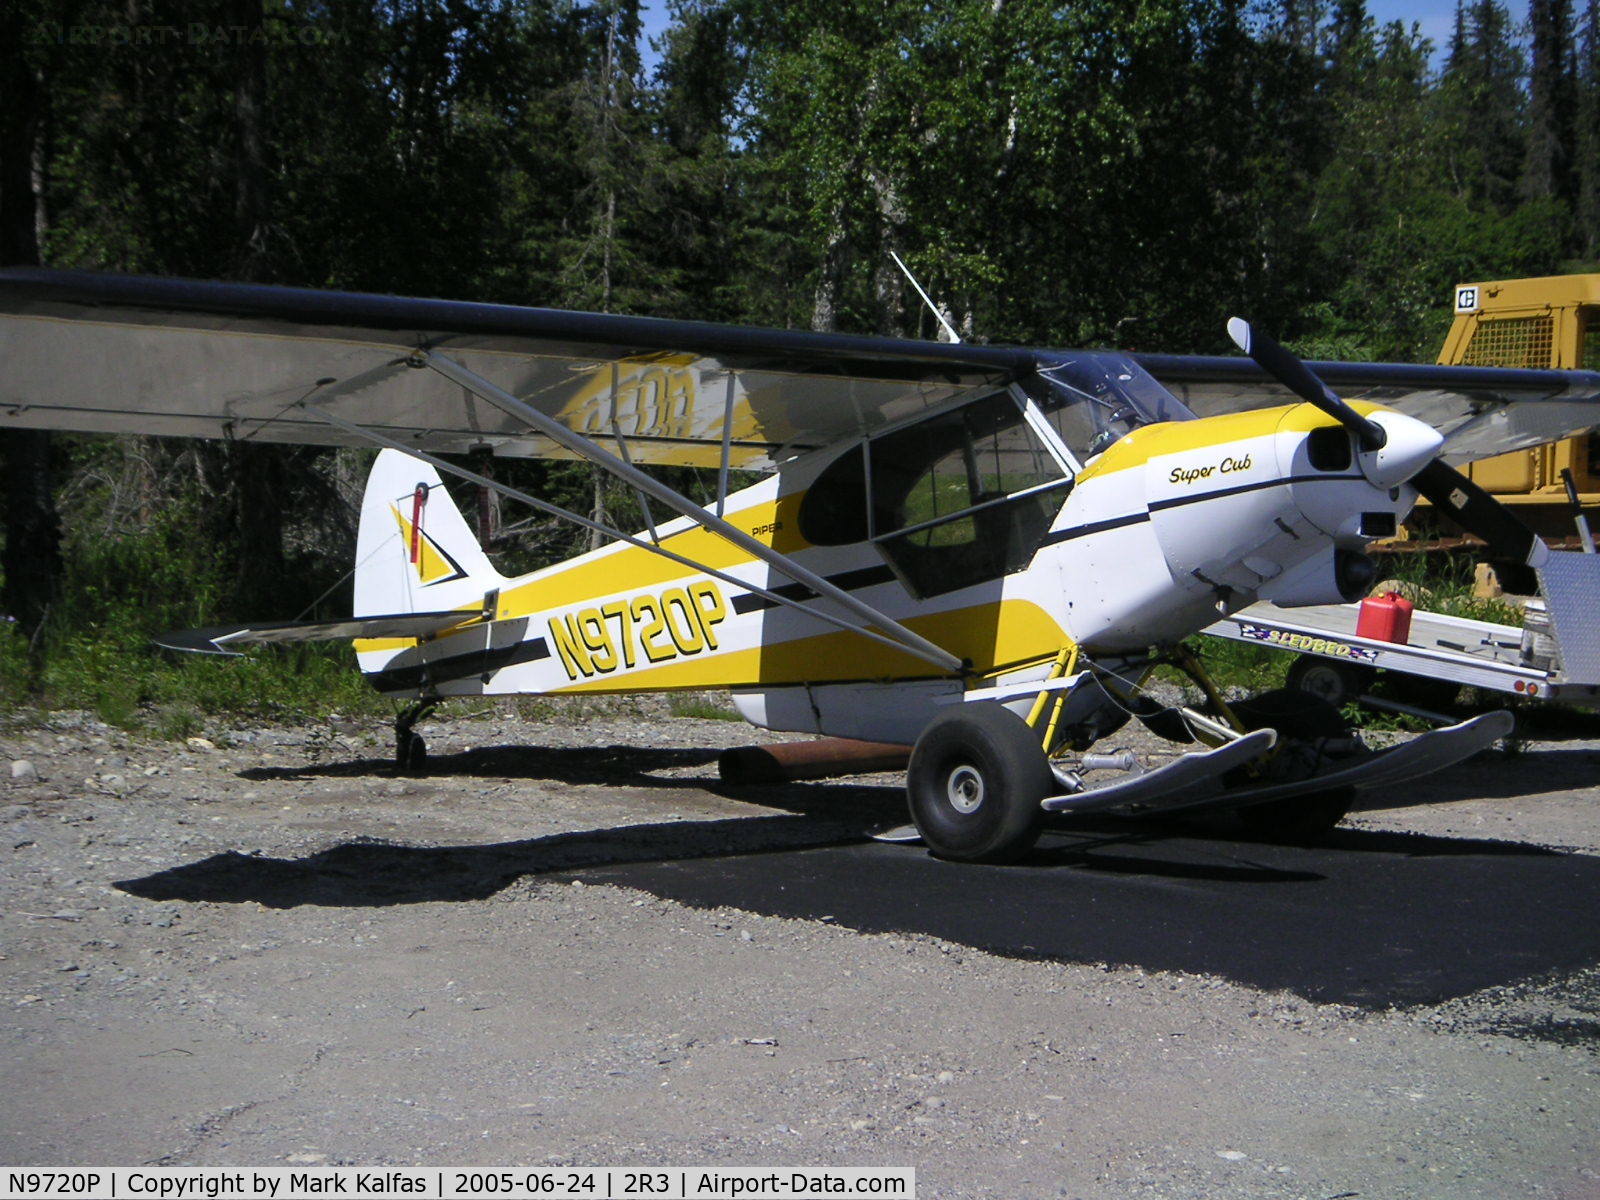 N9720P, 1975 Piper PA-18-150 Super Cub C/N 18-7509137, Alaska West Air Piper PA-18-150, N9720P at Island Lake, AK (2R3).